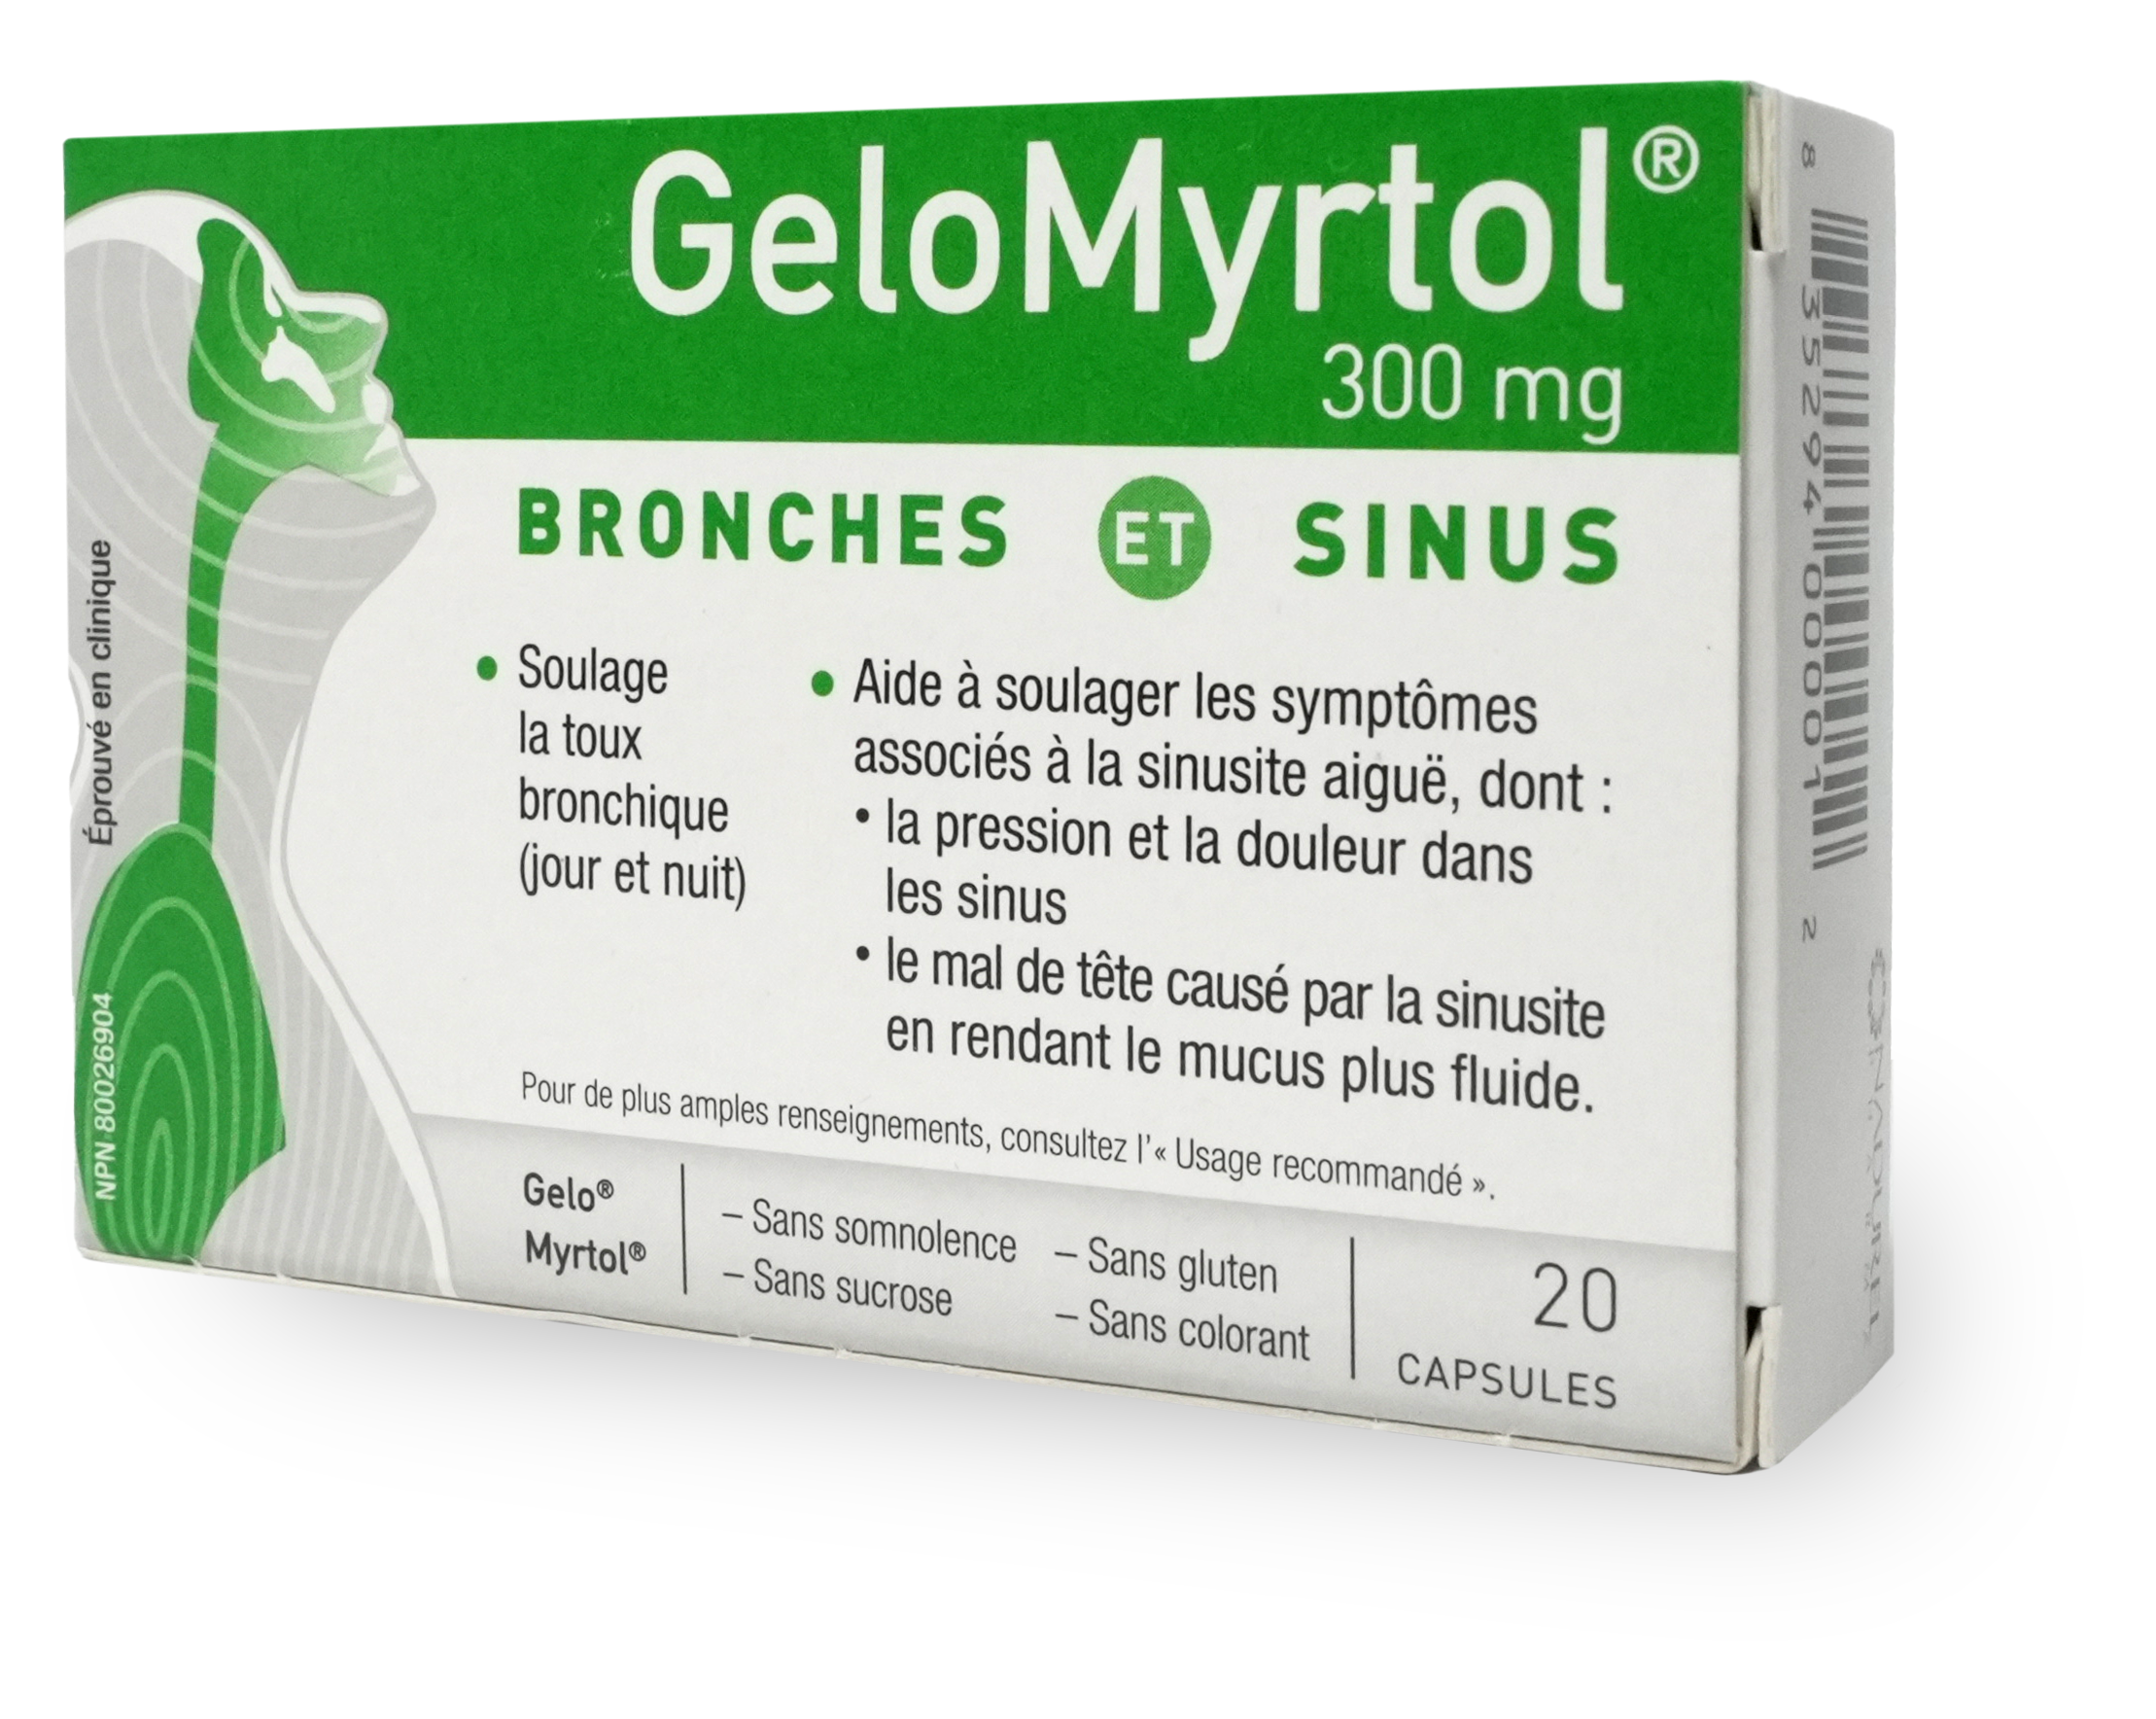 Boîte de GeloMyrtol. La boîte est verte et blanche. On y voit le logo de GeloMyrtol et le nom du produit. On y voit aussi une illustration d'une personne qui respire avec ses voies respiratoires en vert.